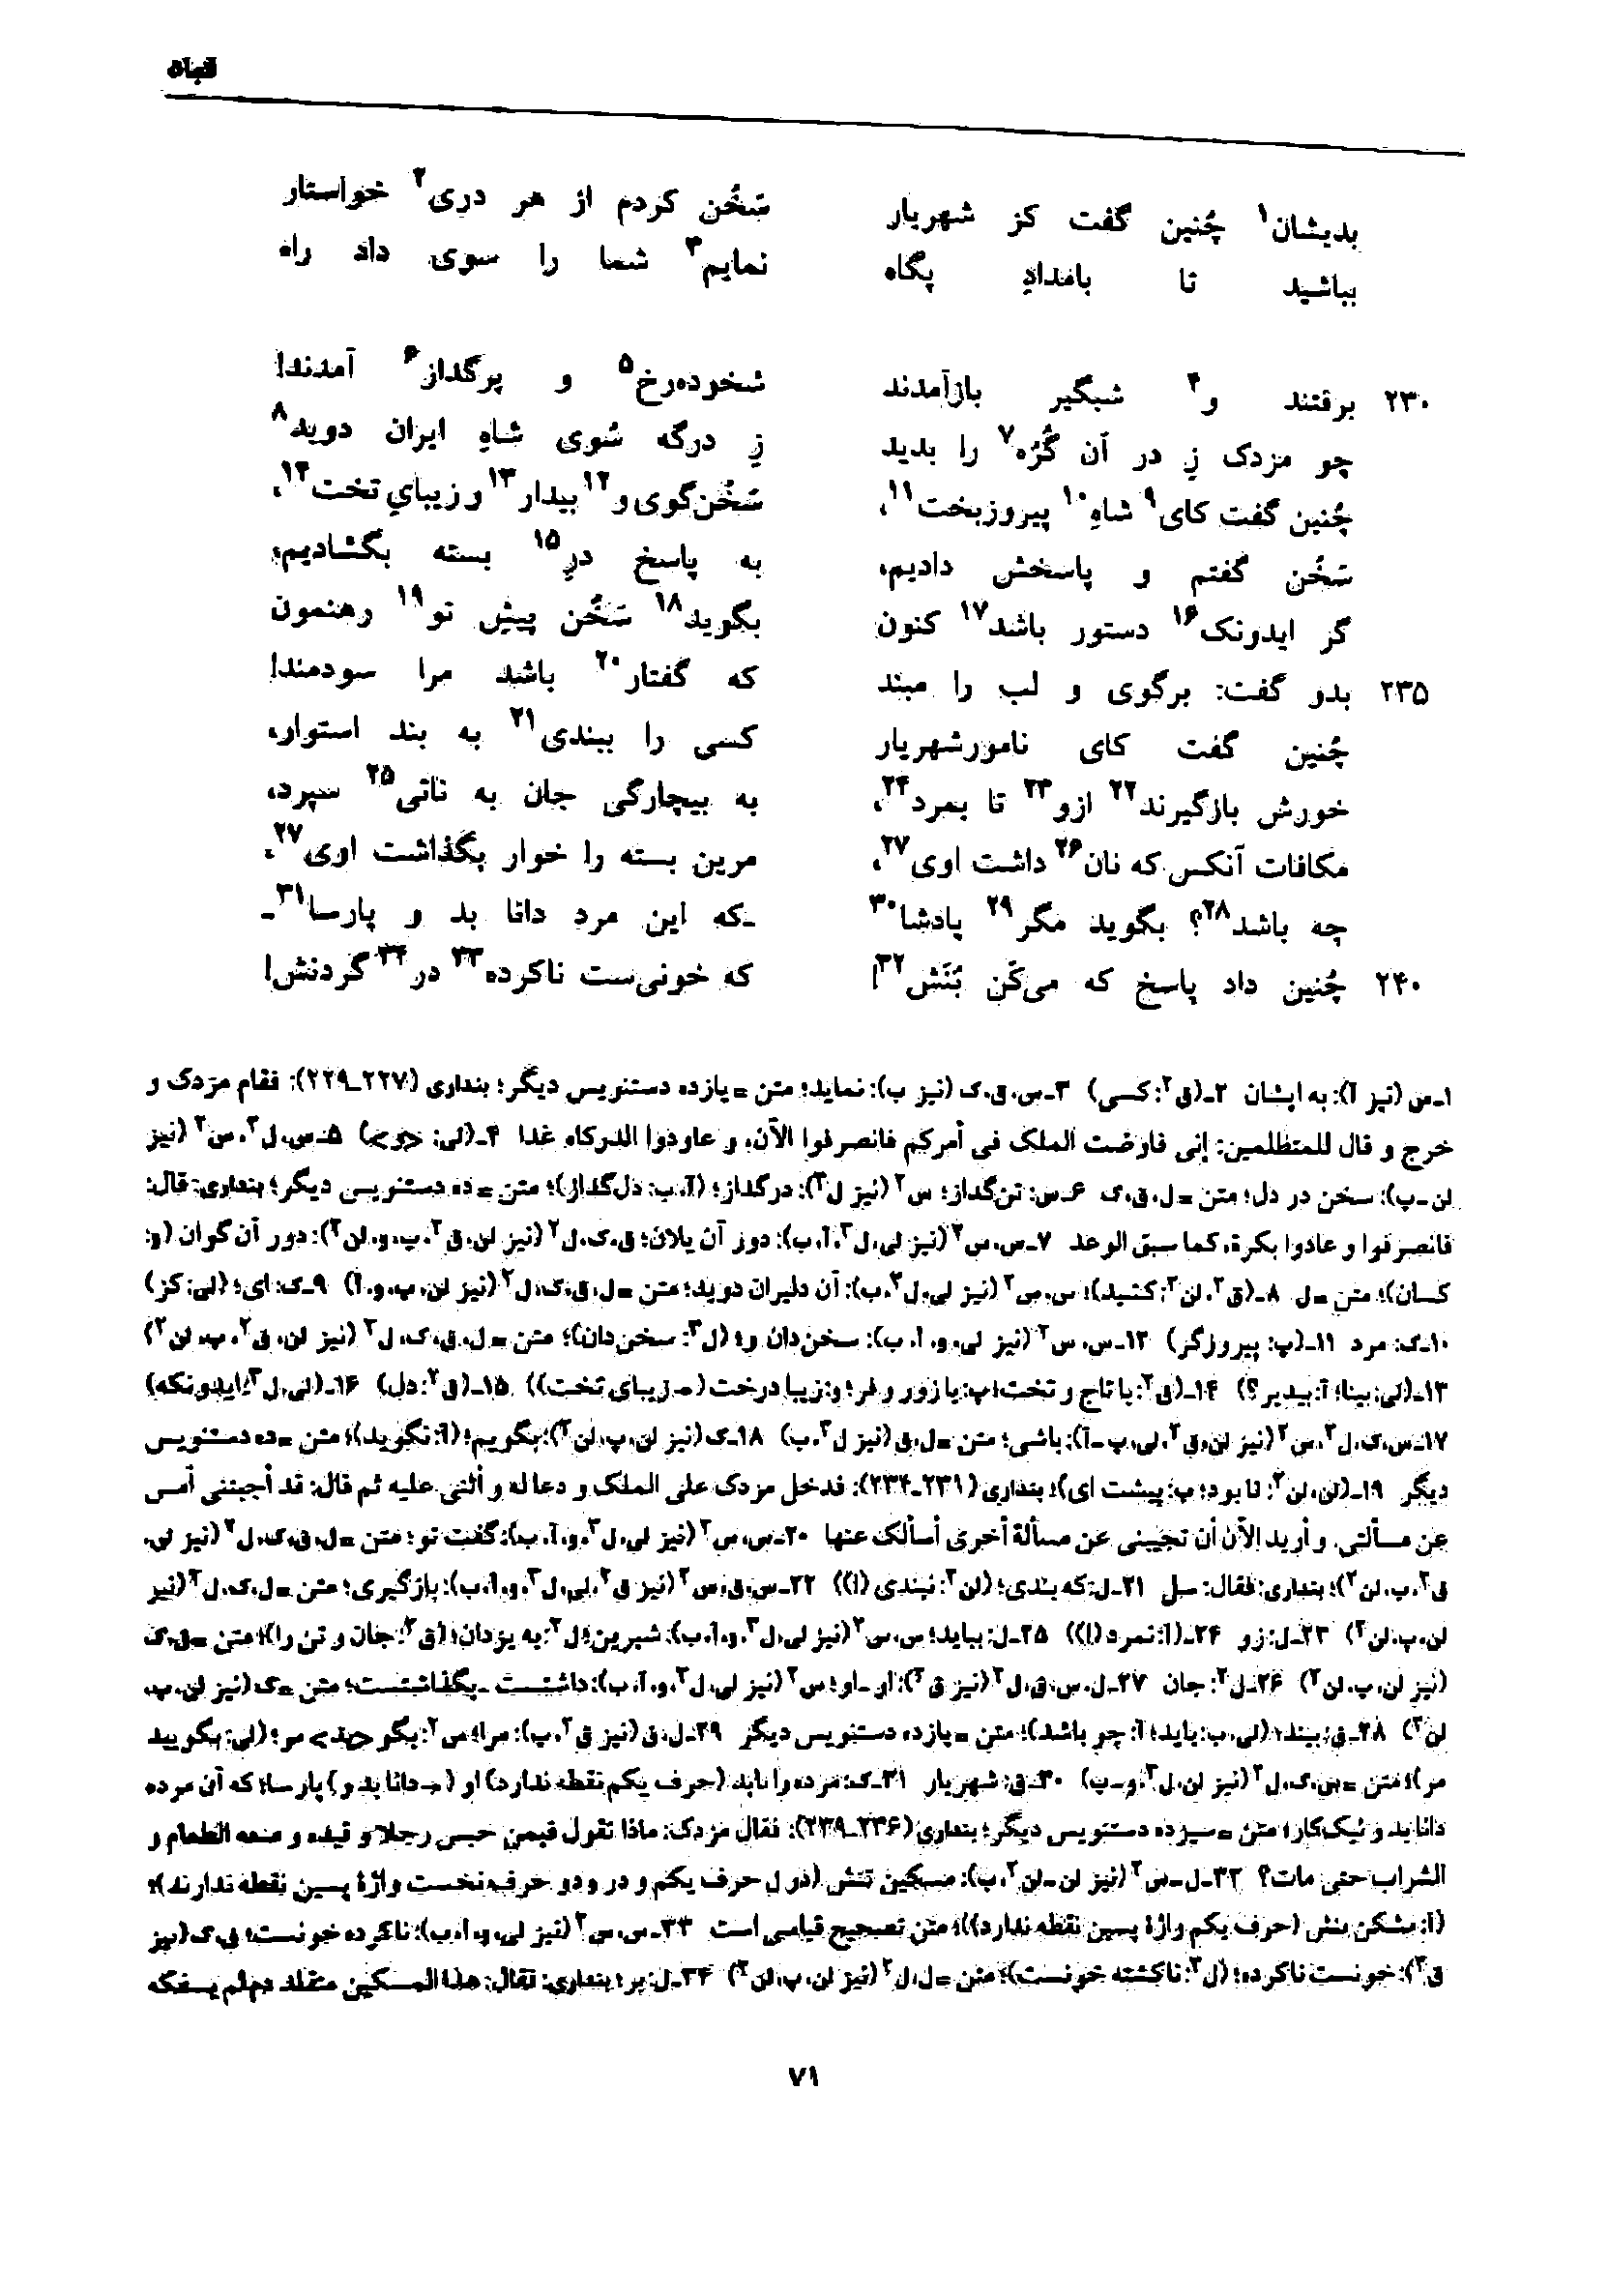 vol. 7, p. 71